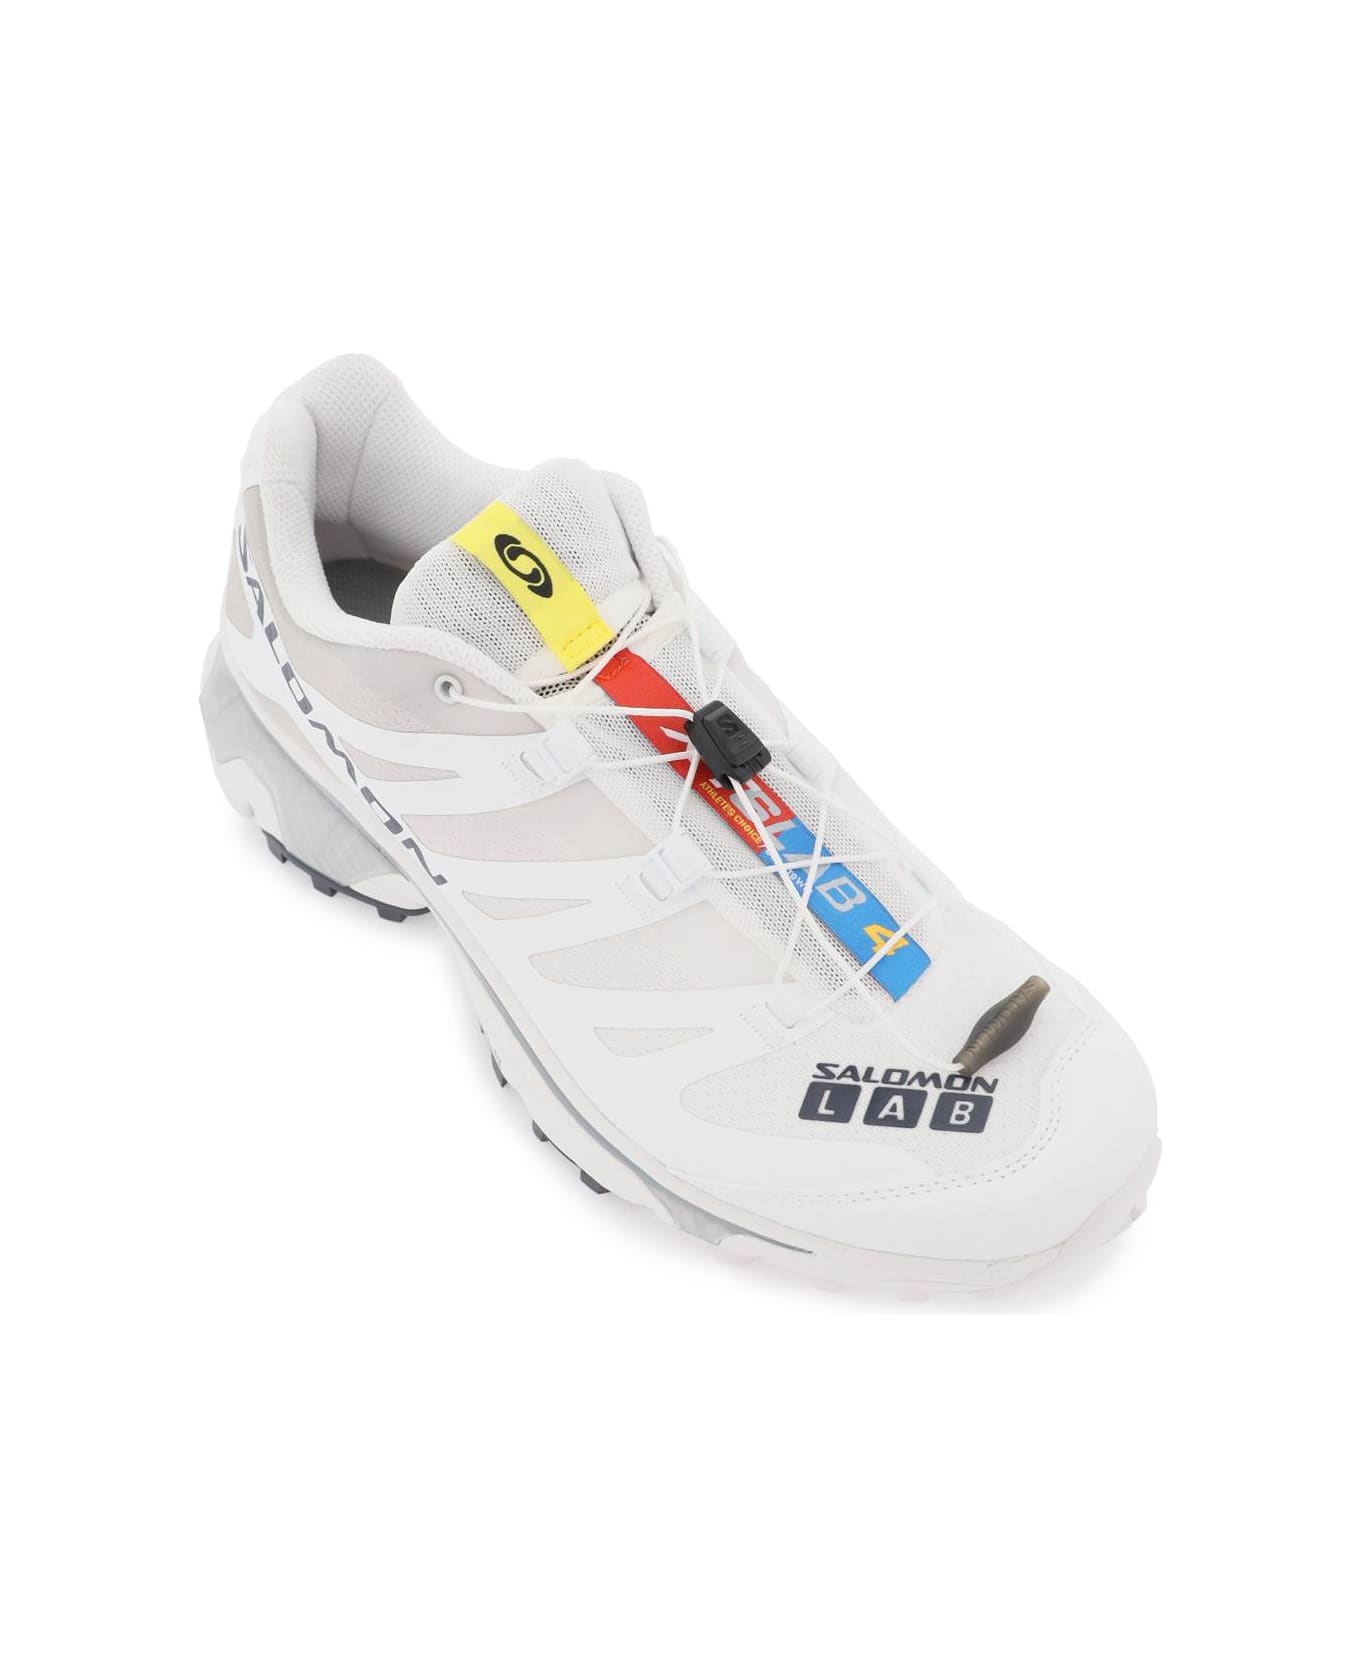 Salomon Xt-4 Og Sneakers - WHITE EBONY LUNAR ROCK (White)